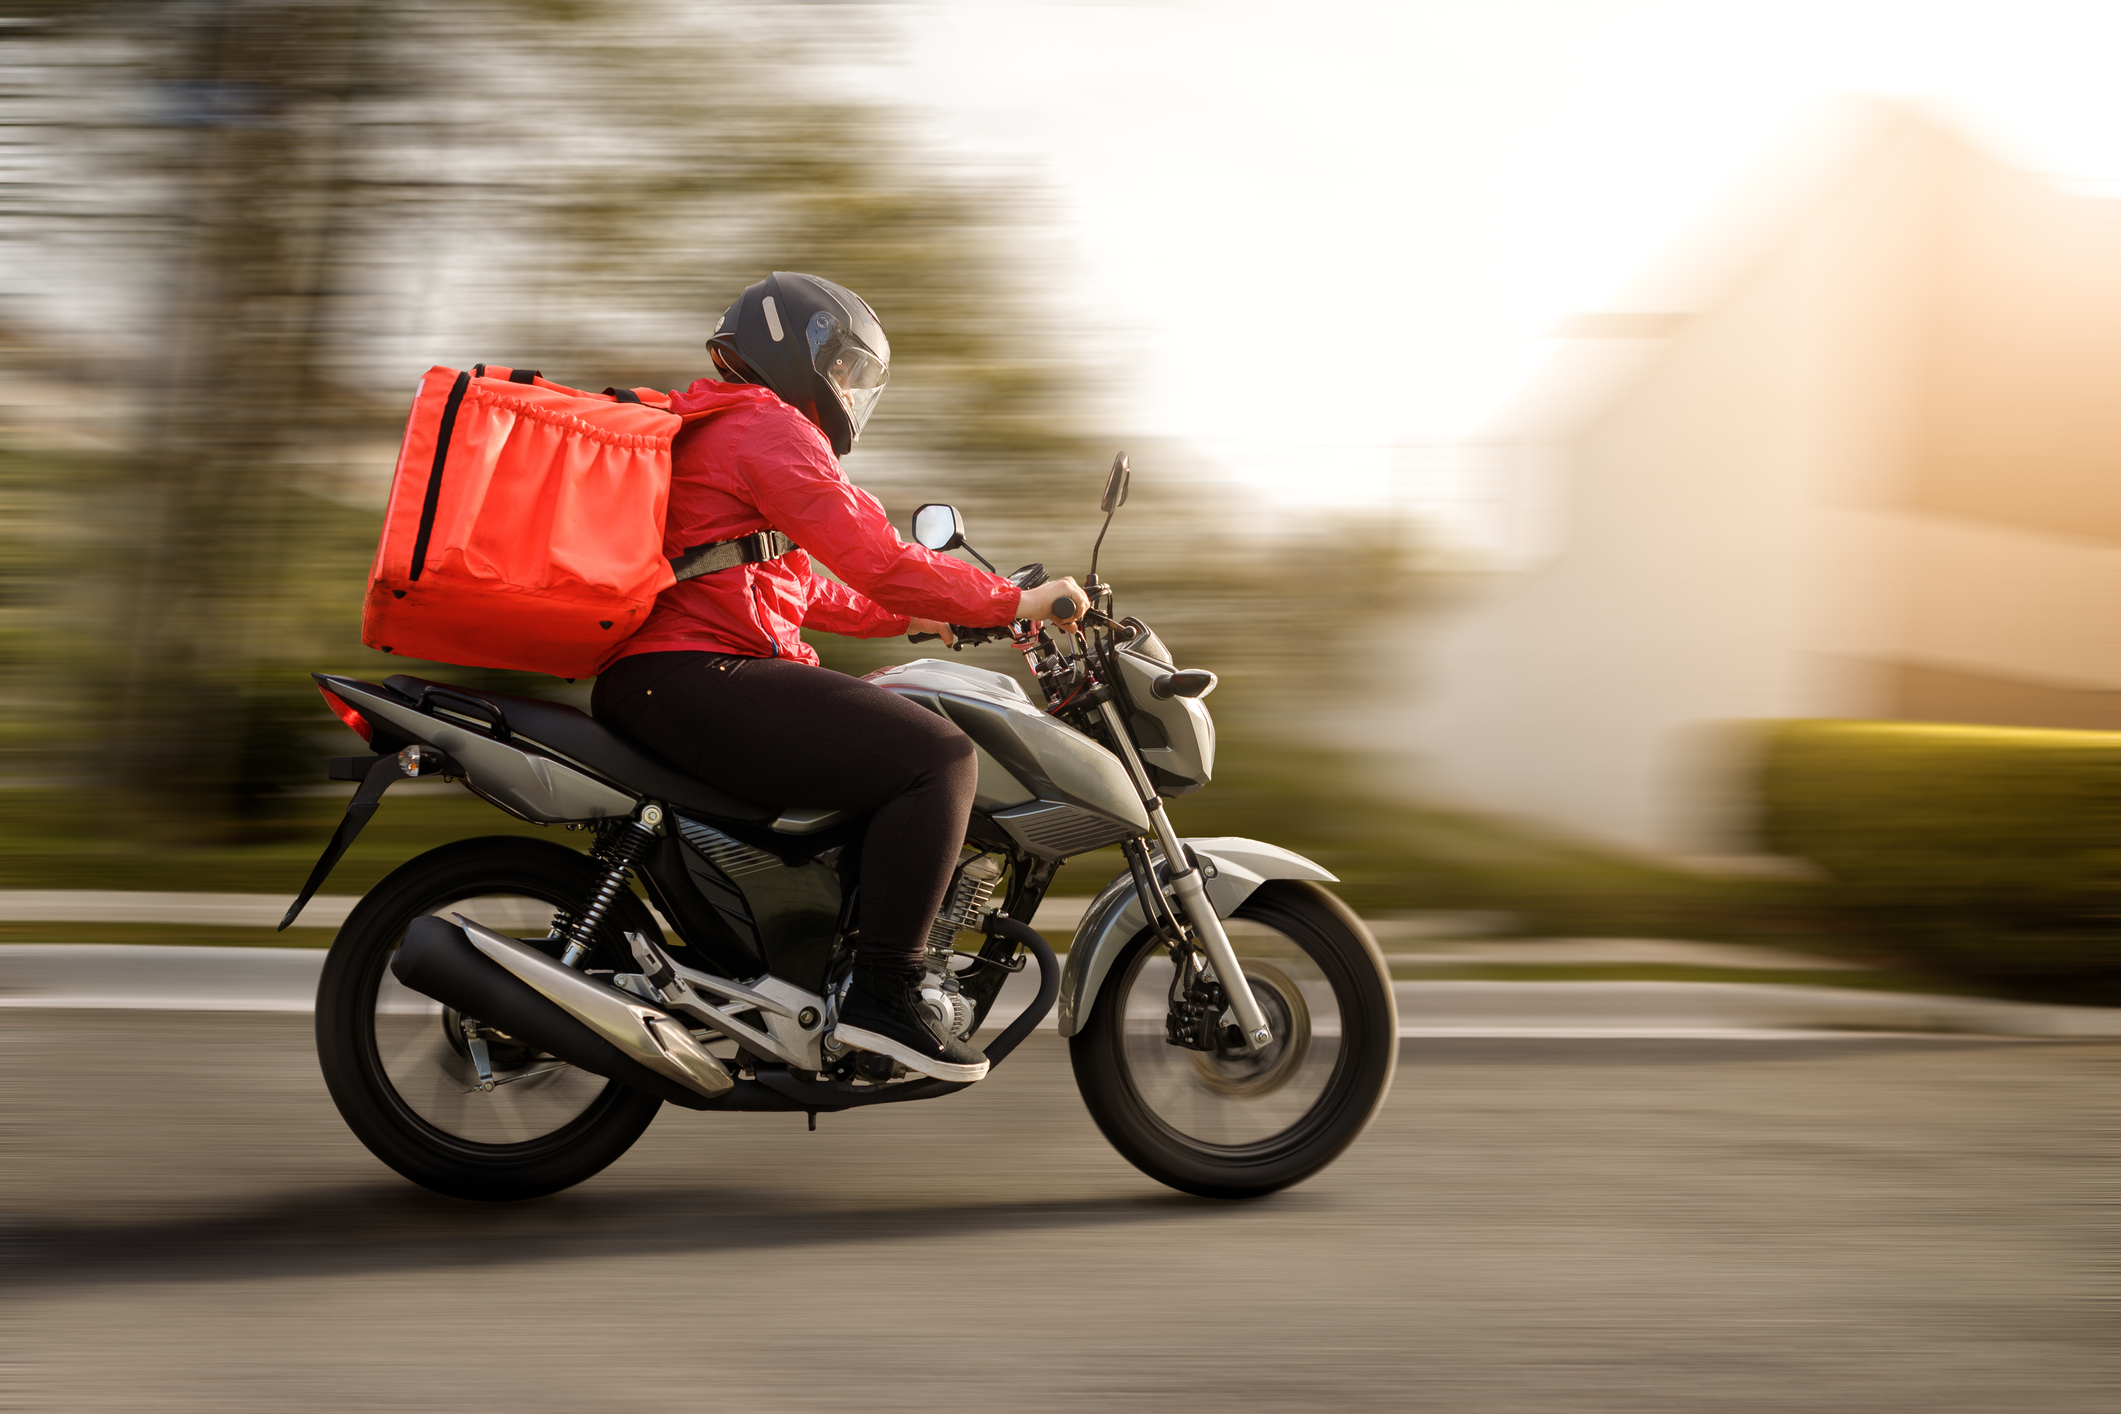 Coordenadora de motoqueiros ganha ação contra empresa de entregas e aplicativo de delivery de refeições